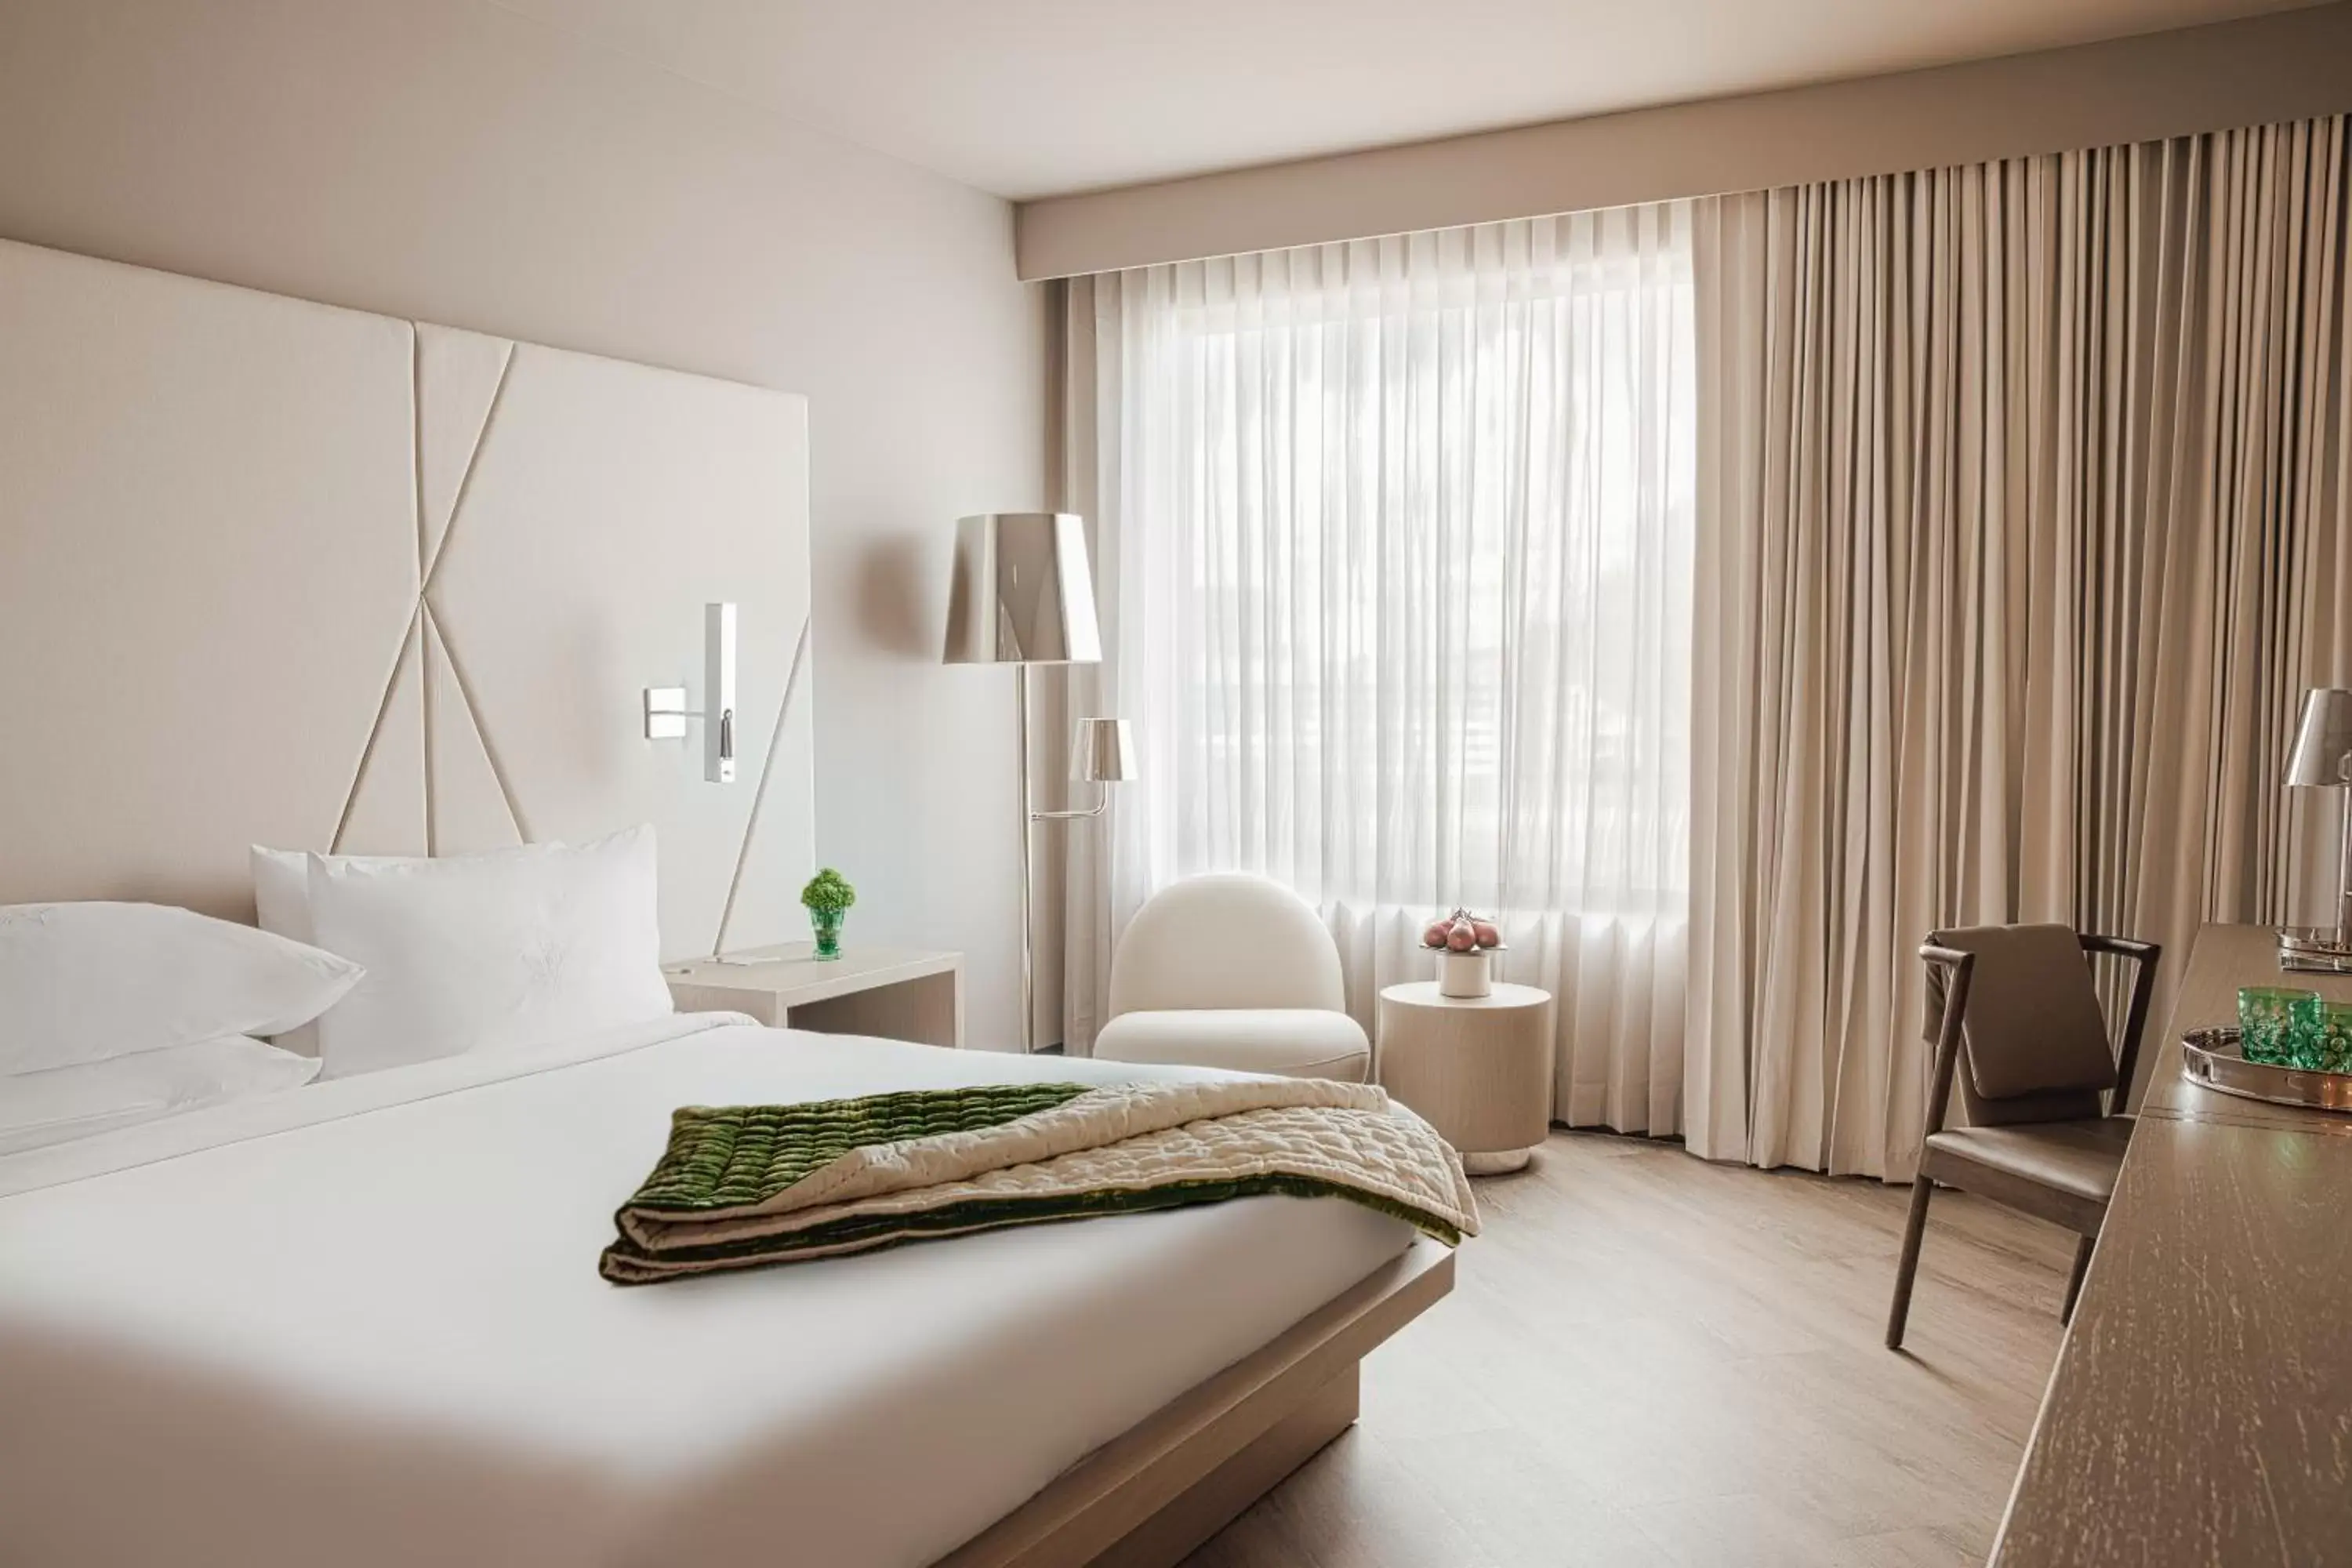 Bed in ette luxury hotel & spa